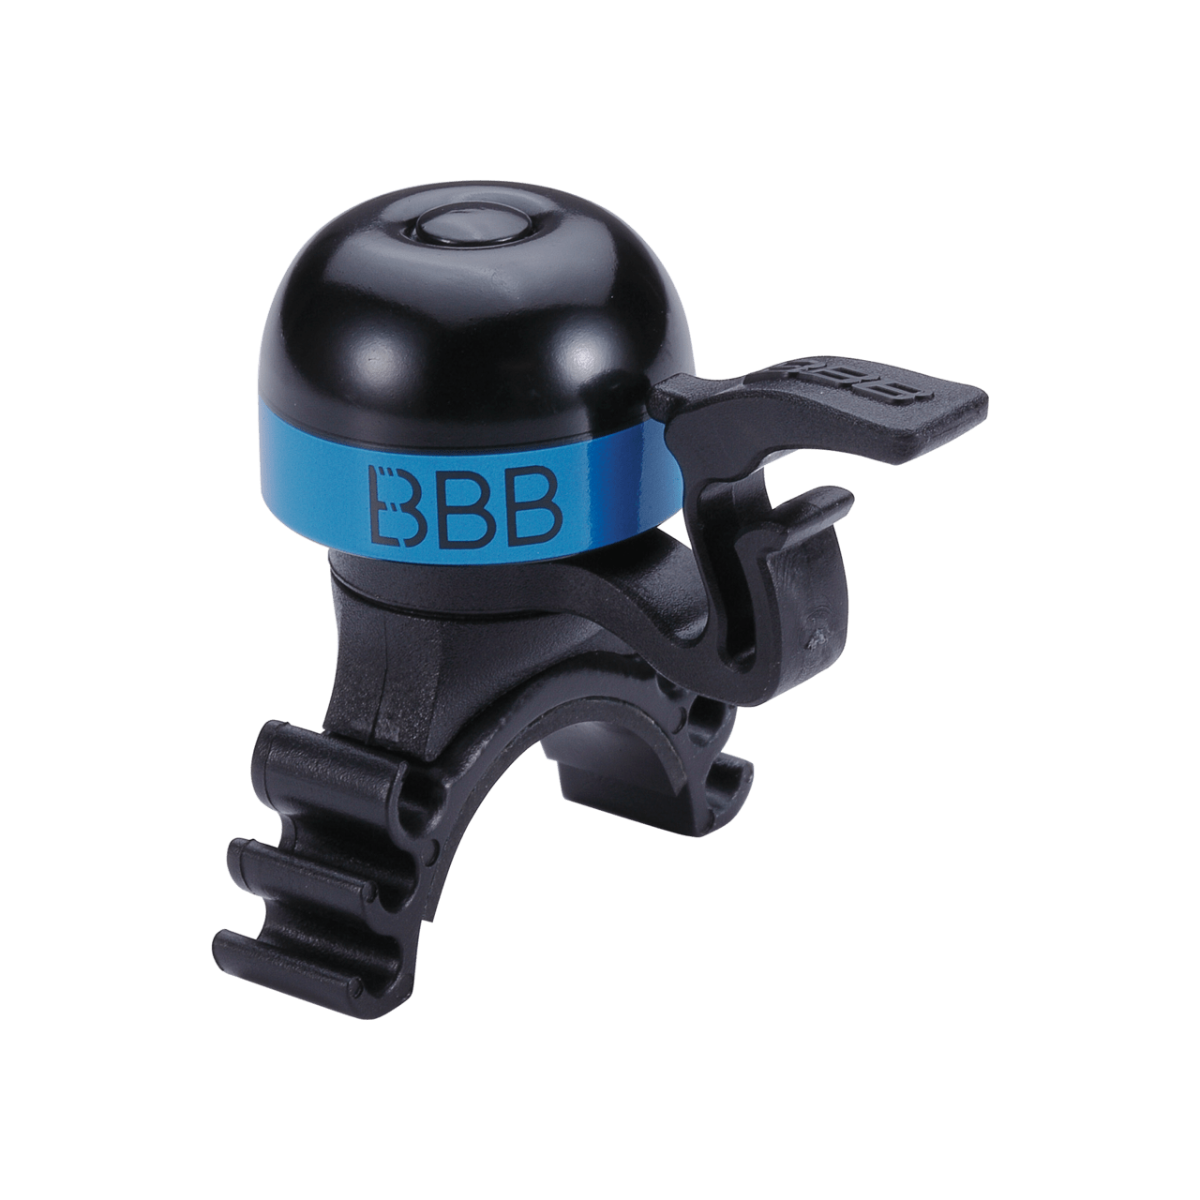 Zvans BBB BBB-16 bike bell minibell black/blue